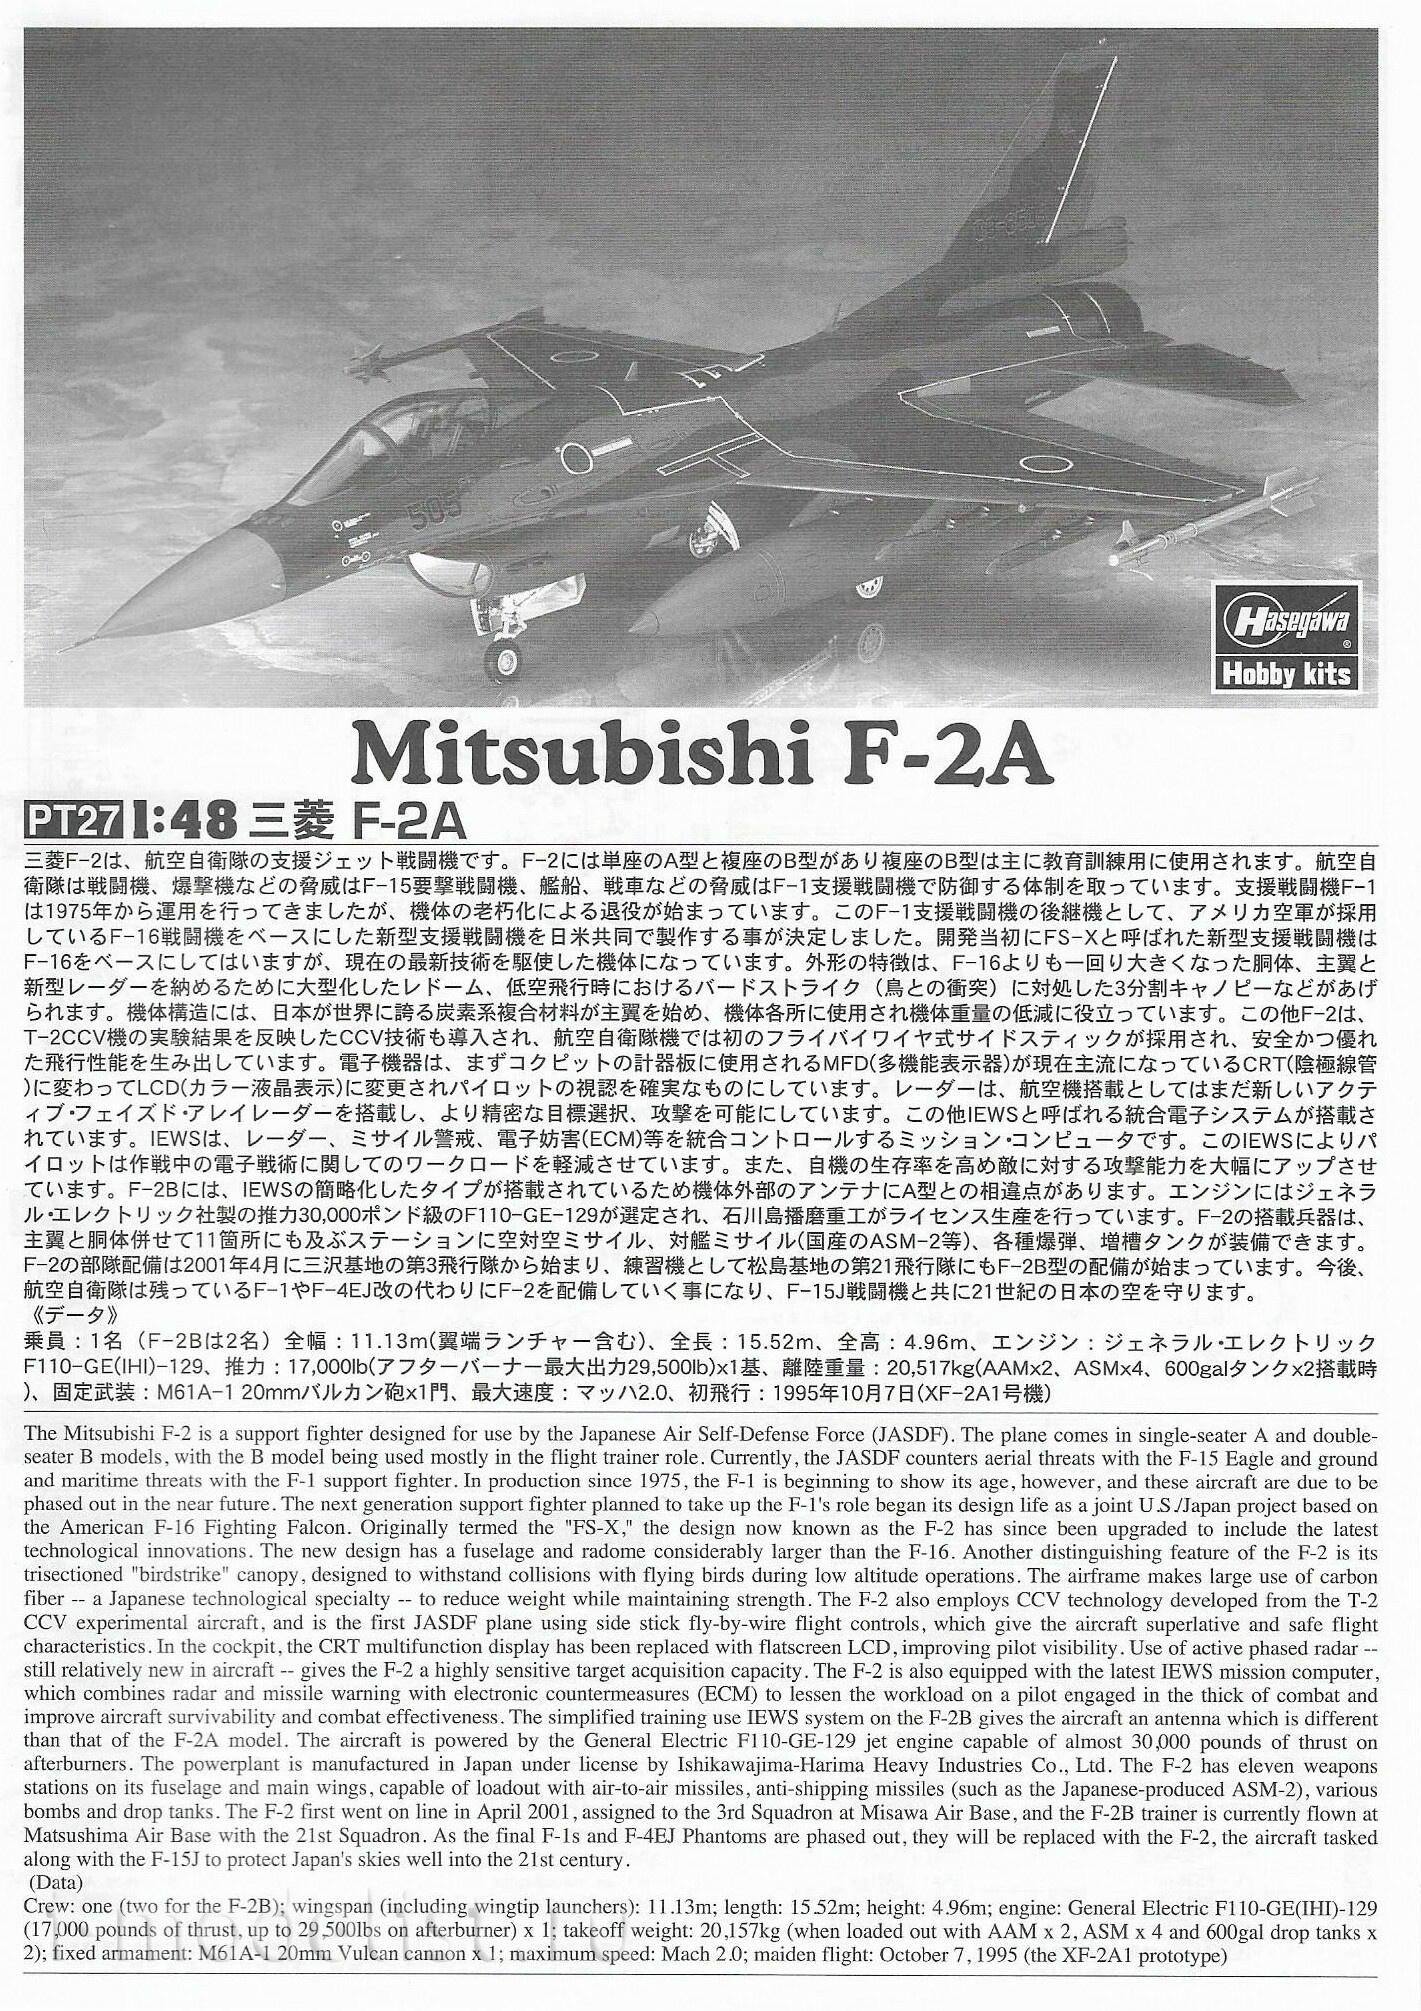 07227 Hasegawa 1/48 Mitsubishi F-2A